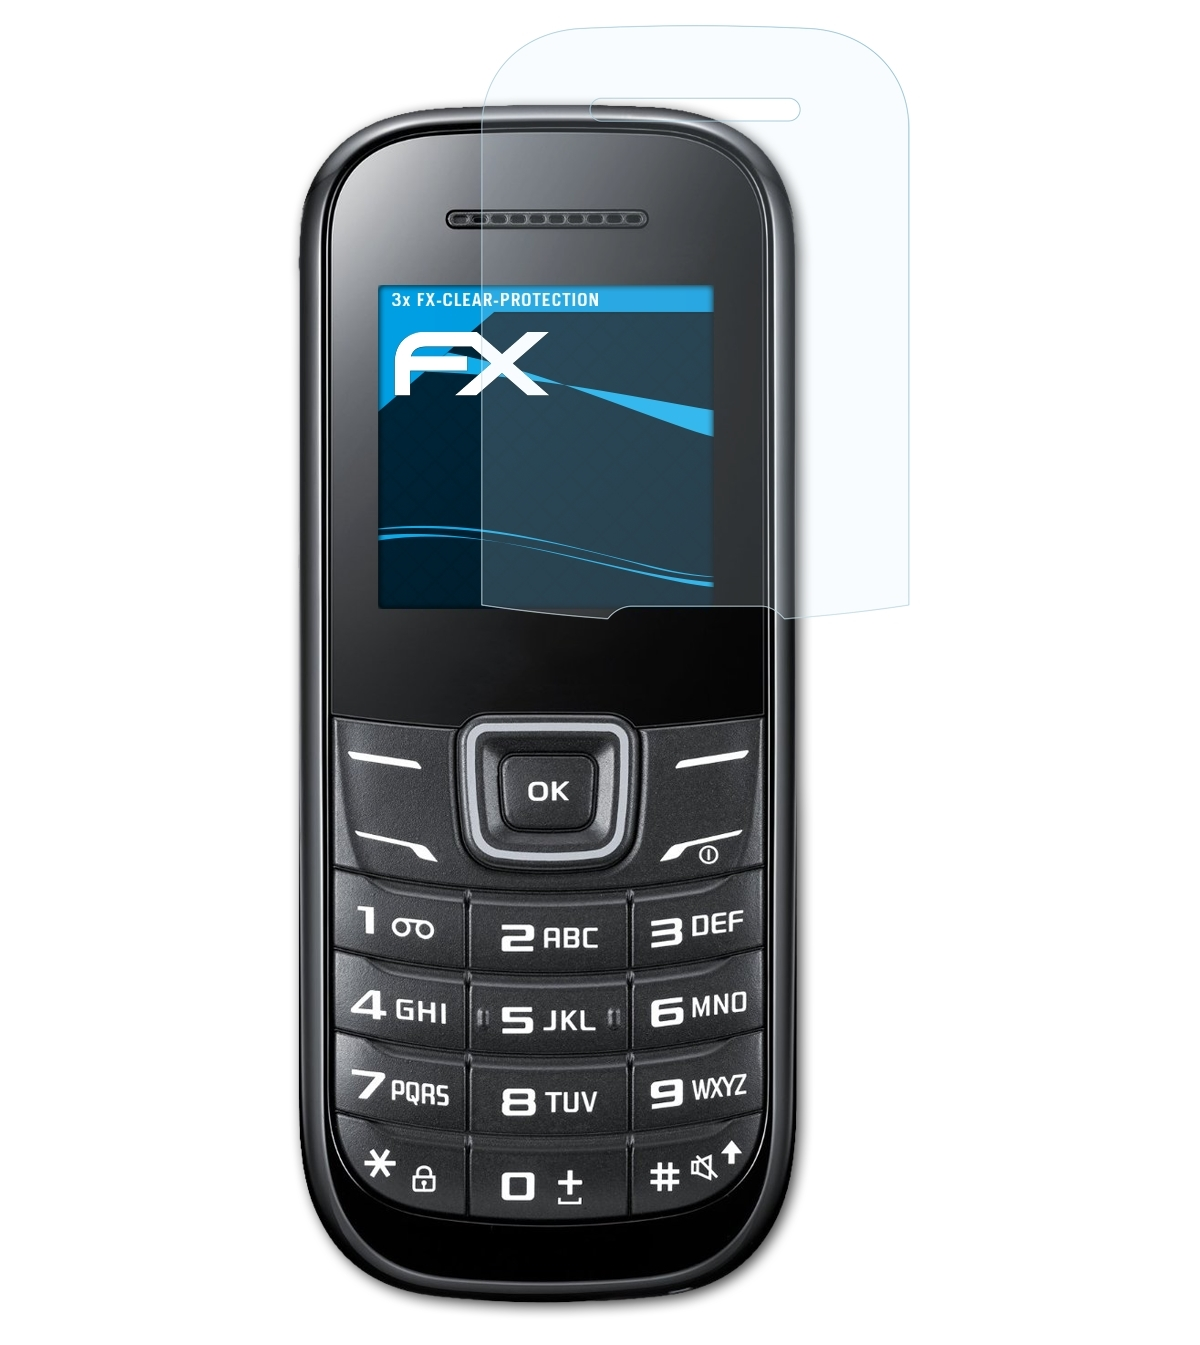 ATFOLIX 3x E1200) Samsung Displayschutz(für FX-Clear